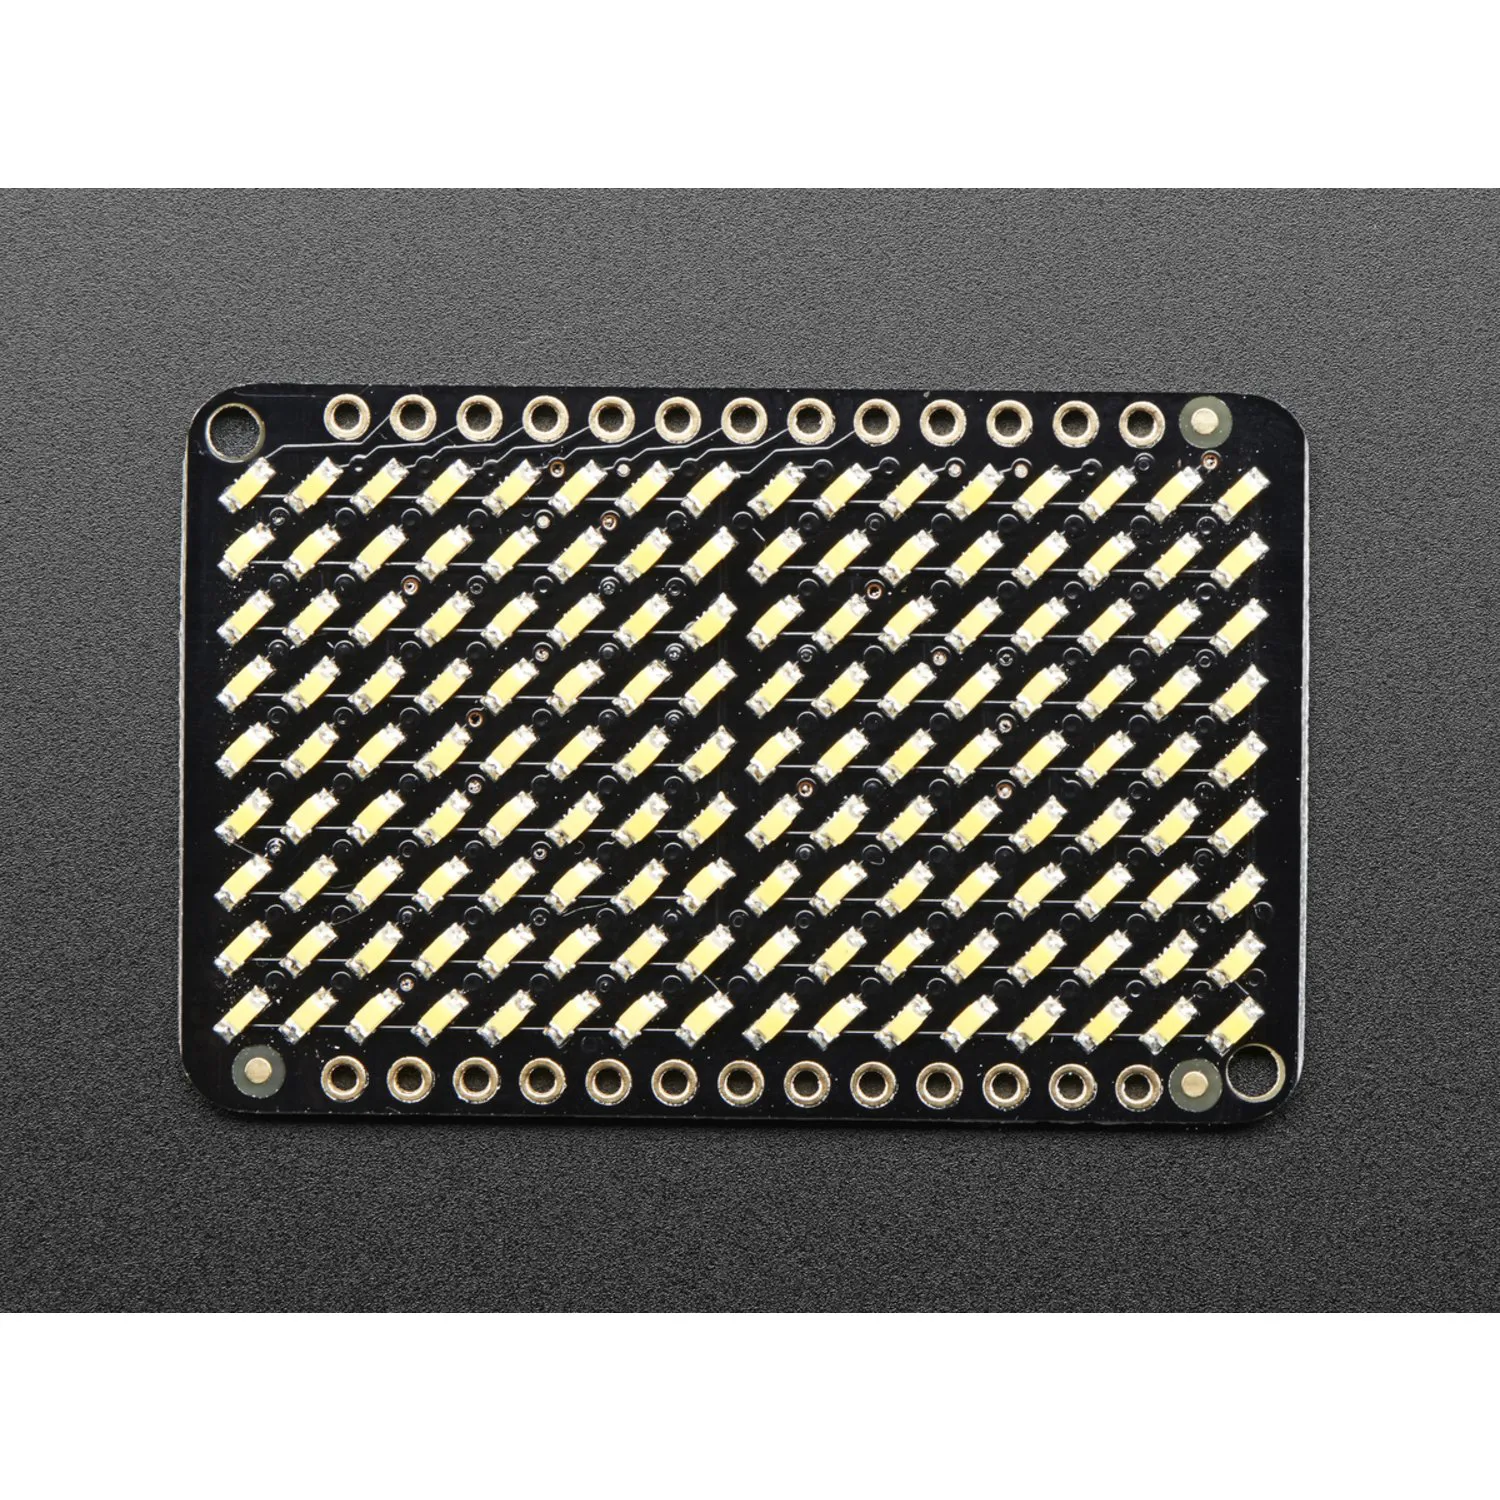 Photo of LED Charlieplexed Matrix - 9x16 LEDs - Warm White